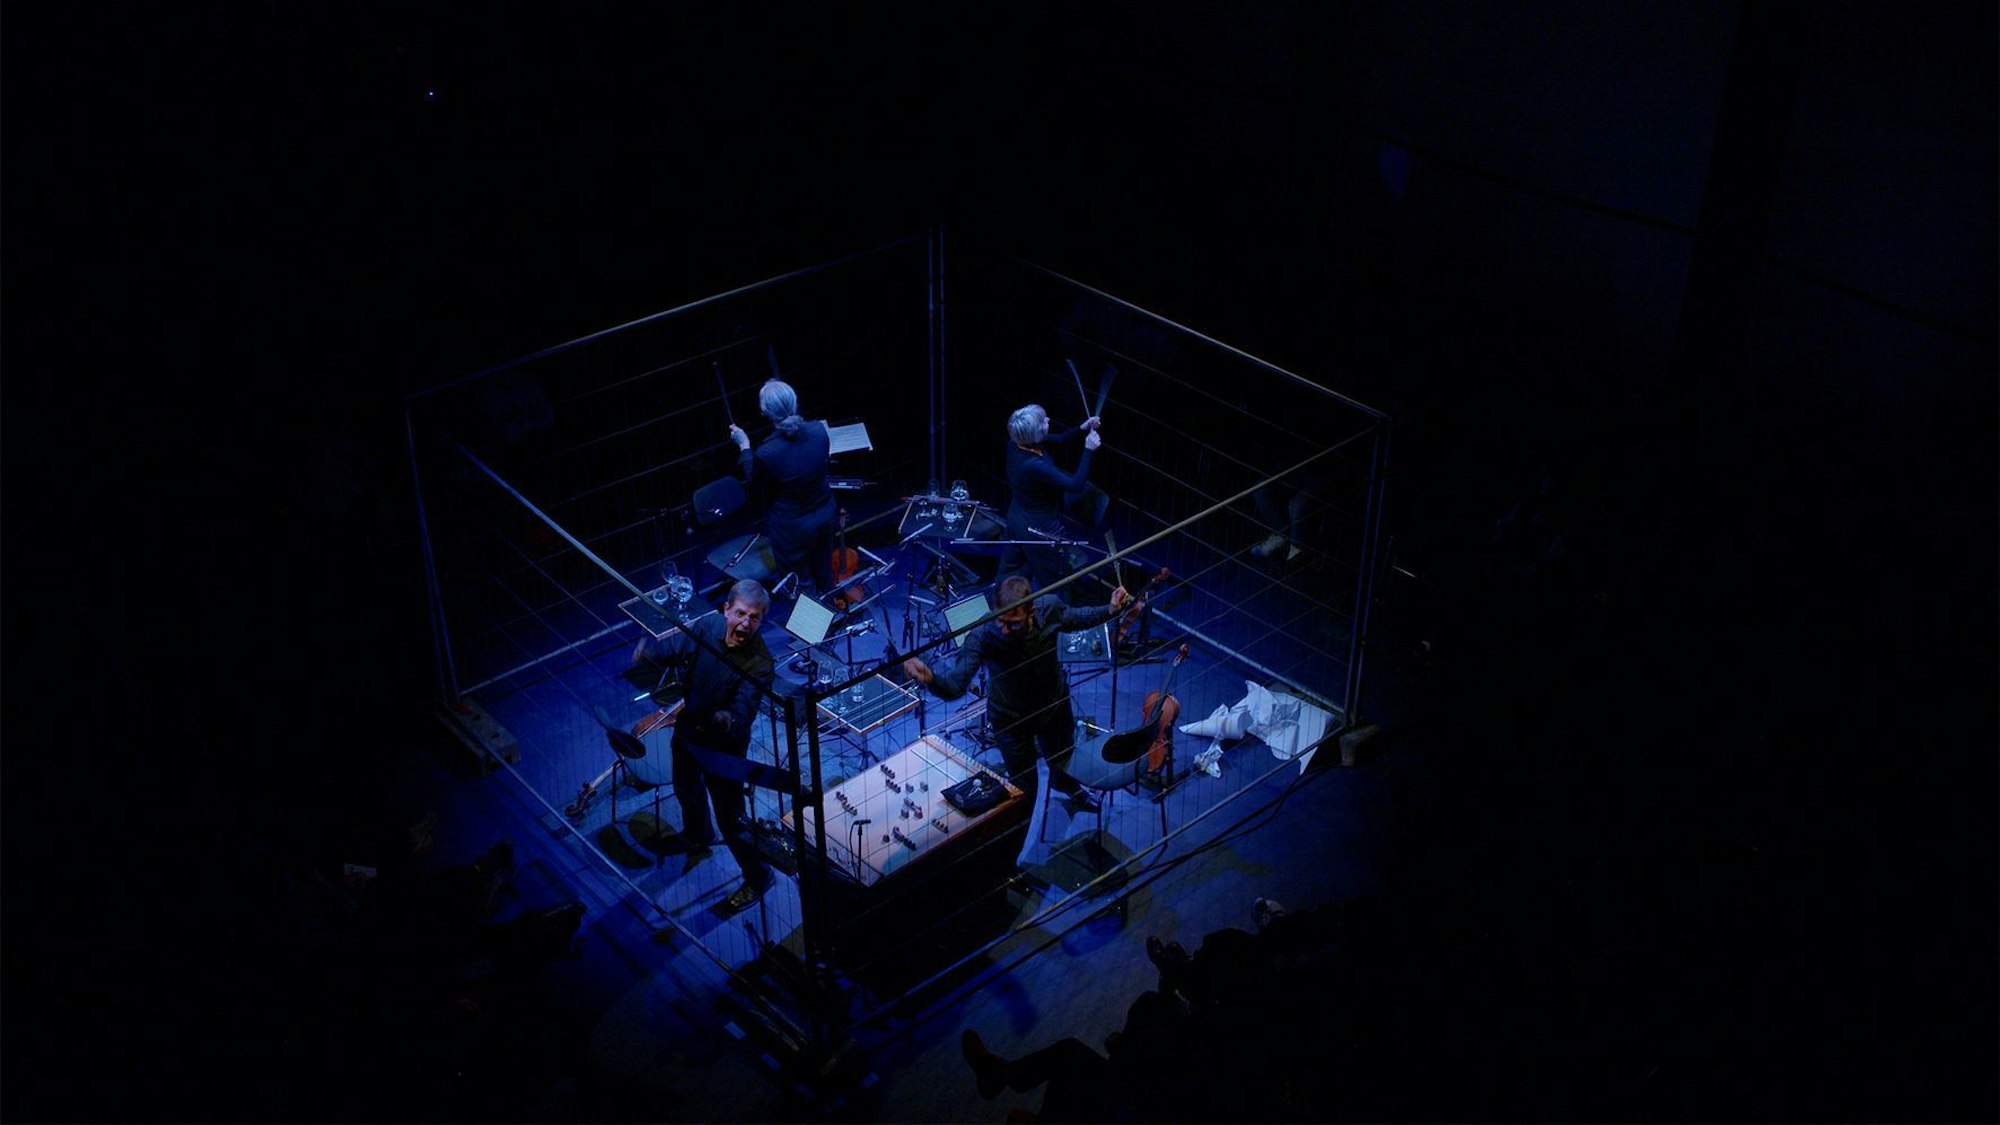 Zu sehen sind vier Musiker mit ihren Instrumenten in der Mitte des bildes, eingepfercht mit Plexiglasscheiben und bläulichz beleuchtet. Der Rest des Bildes ist schwarz.